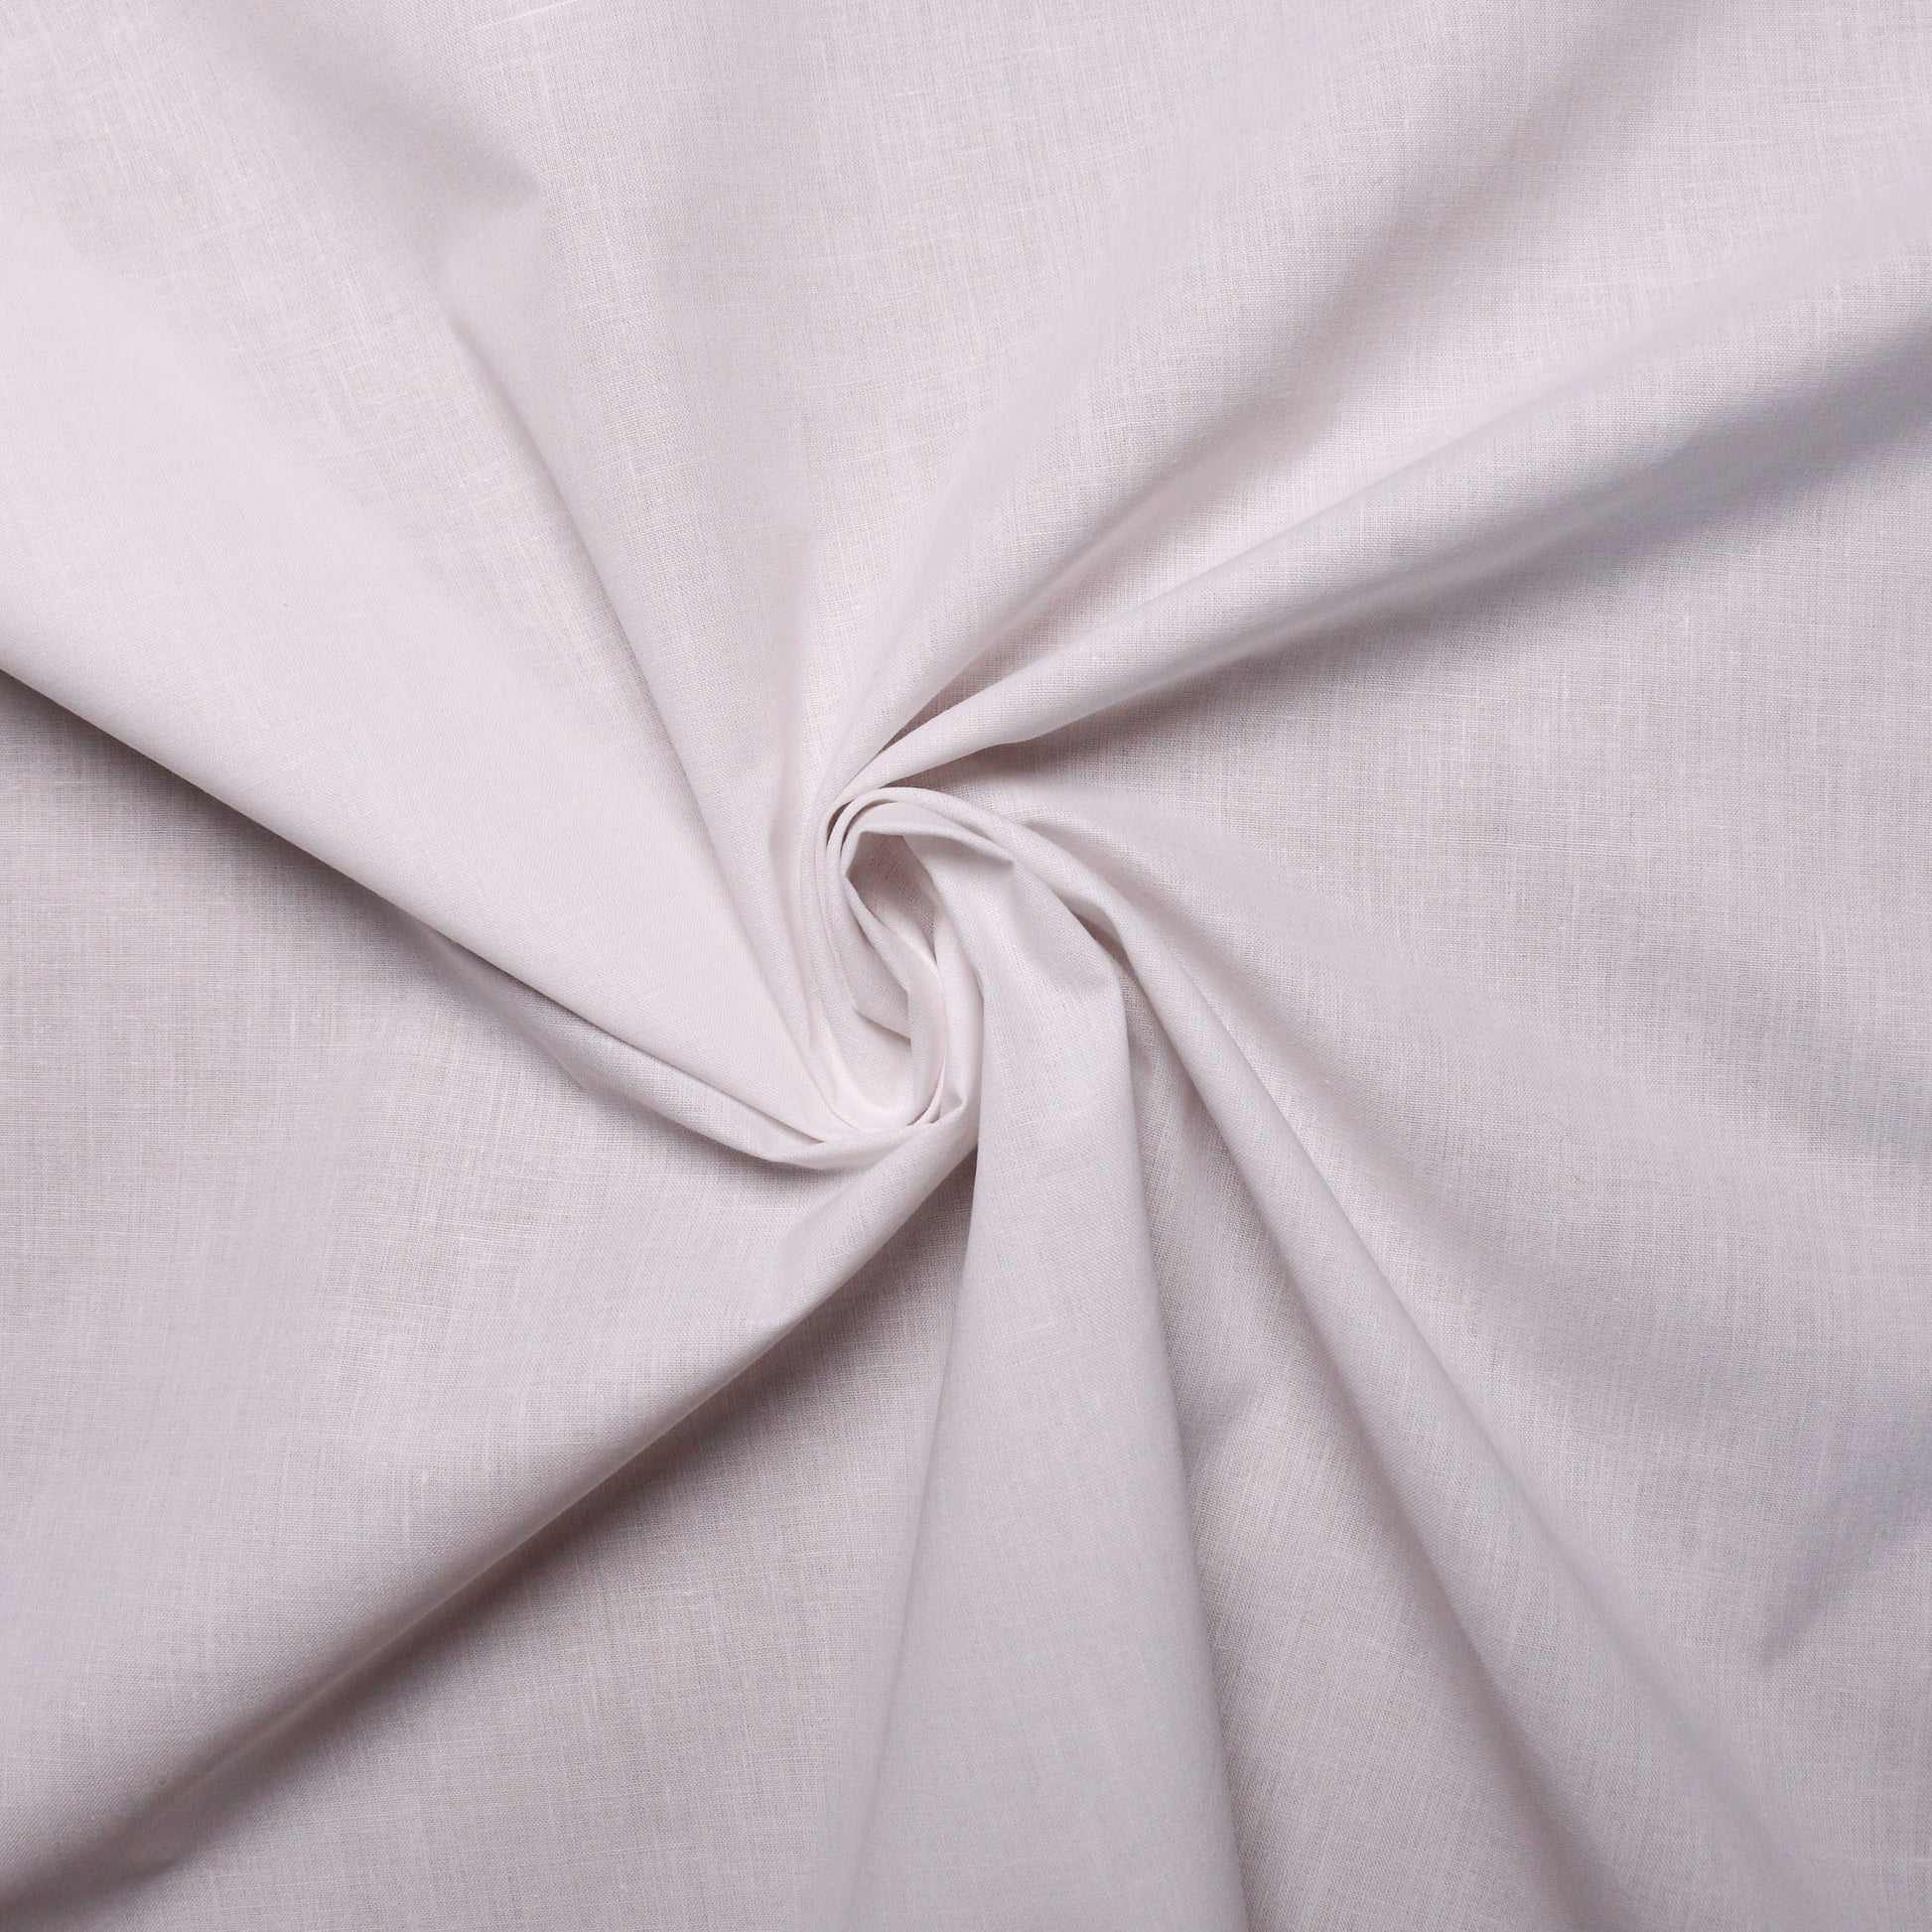 white cotton dressmaking fabric uk sale